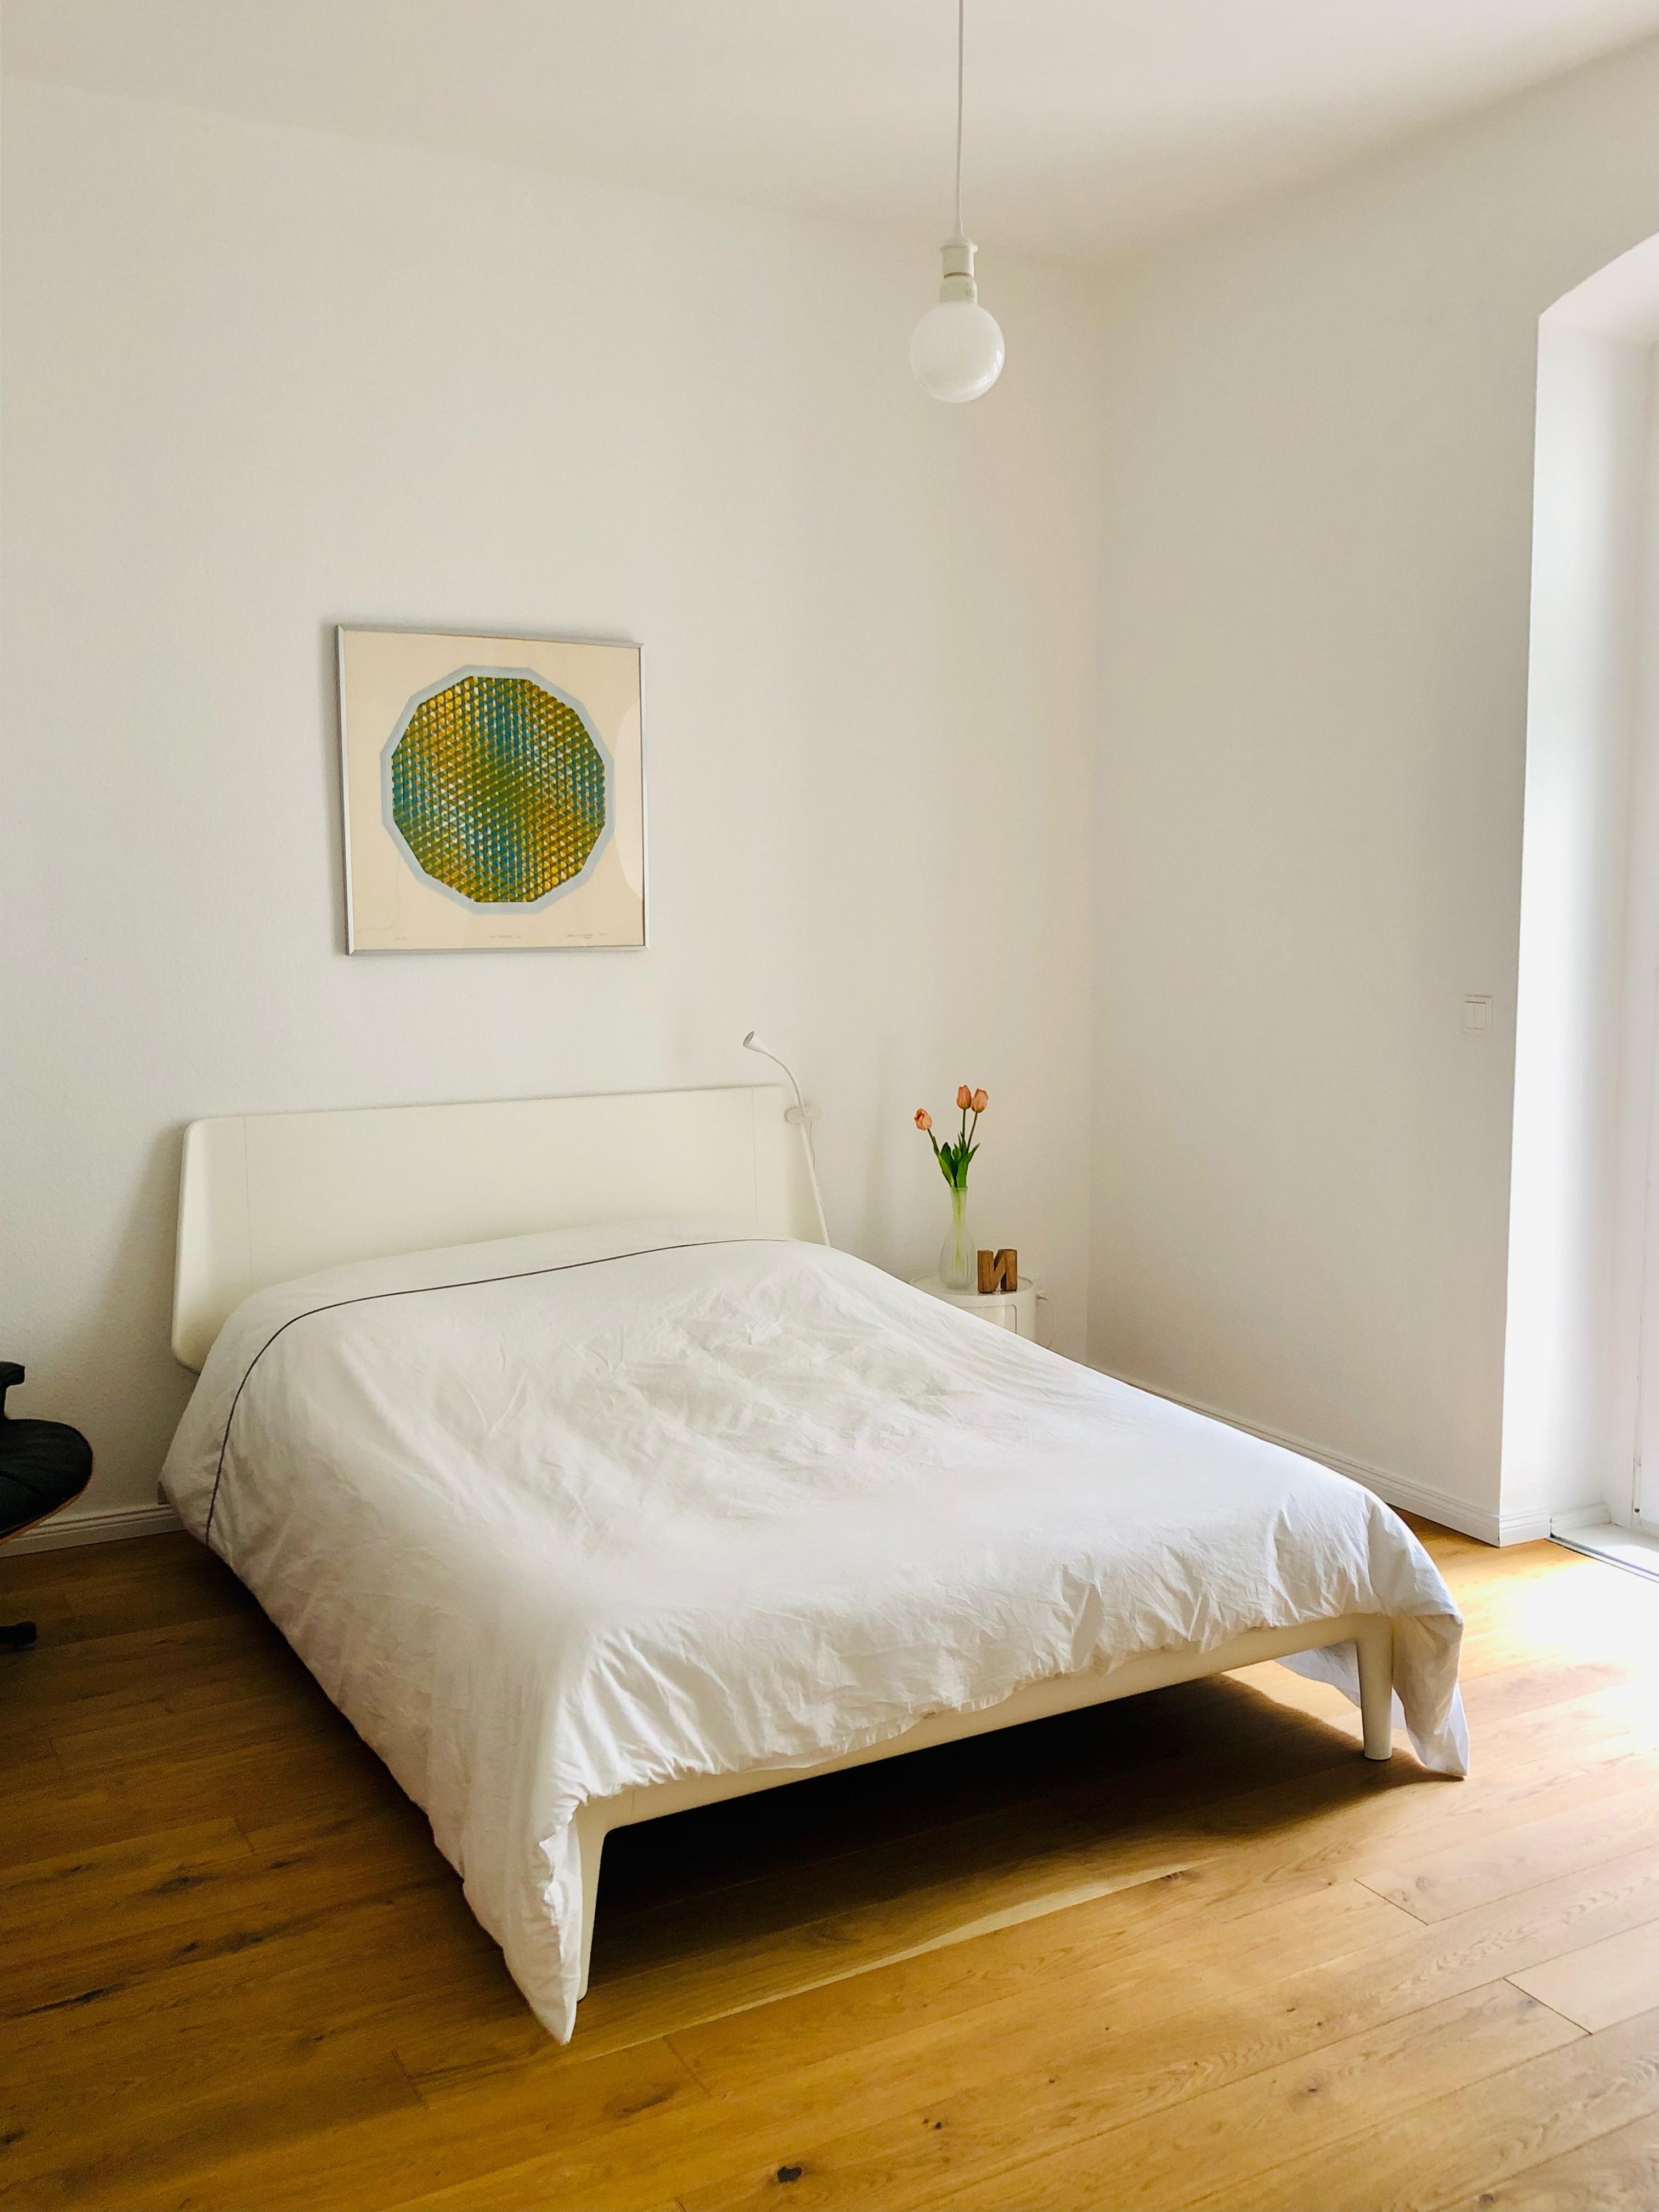 Servus Minga, hello Berlin! Mein neues Schlafzimmer. Mein neues Bett. #clean #minimalistisch #auping 